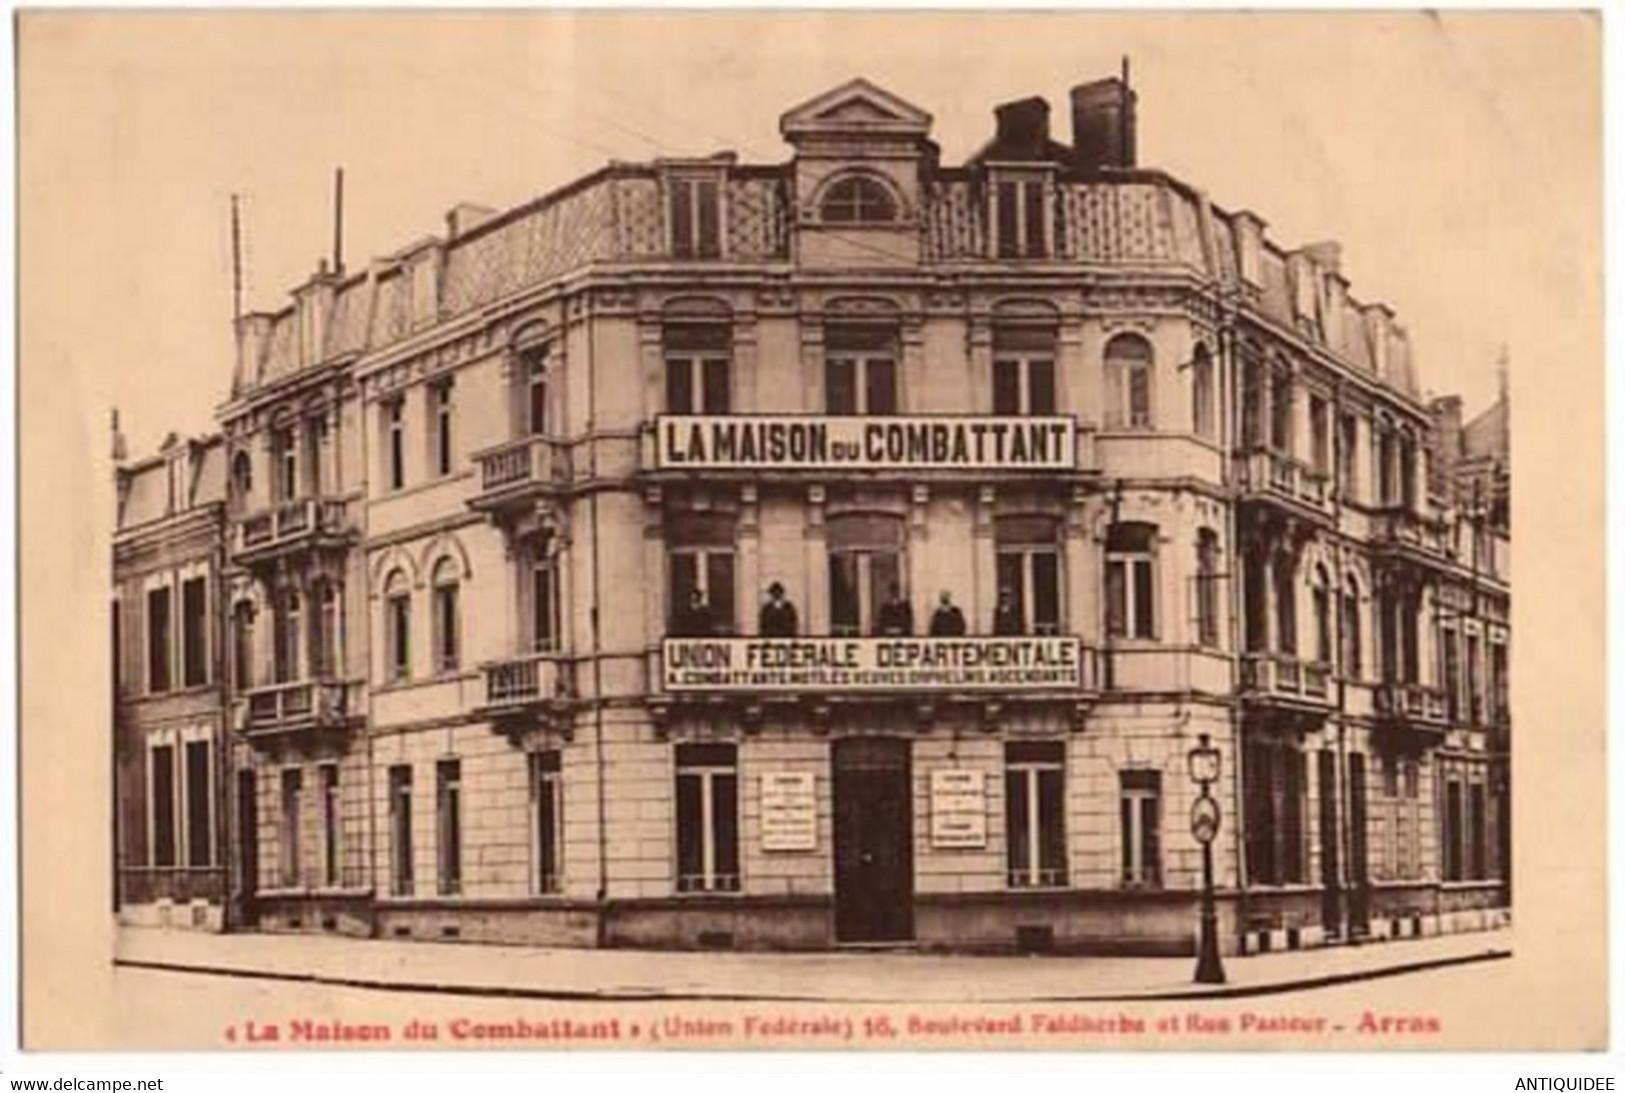 ARRAS - " LA MAISON DU COMBATTANT " ( Union Fédérale ) 16 Boulevard Faidherbe Et Rue Pasteur - - Labor Unions